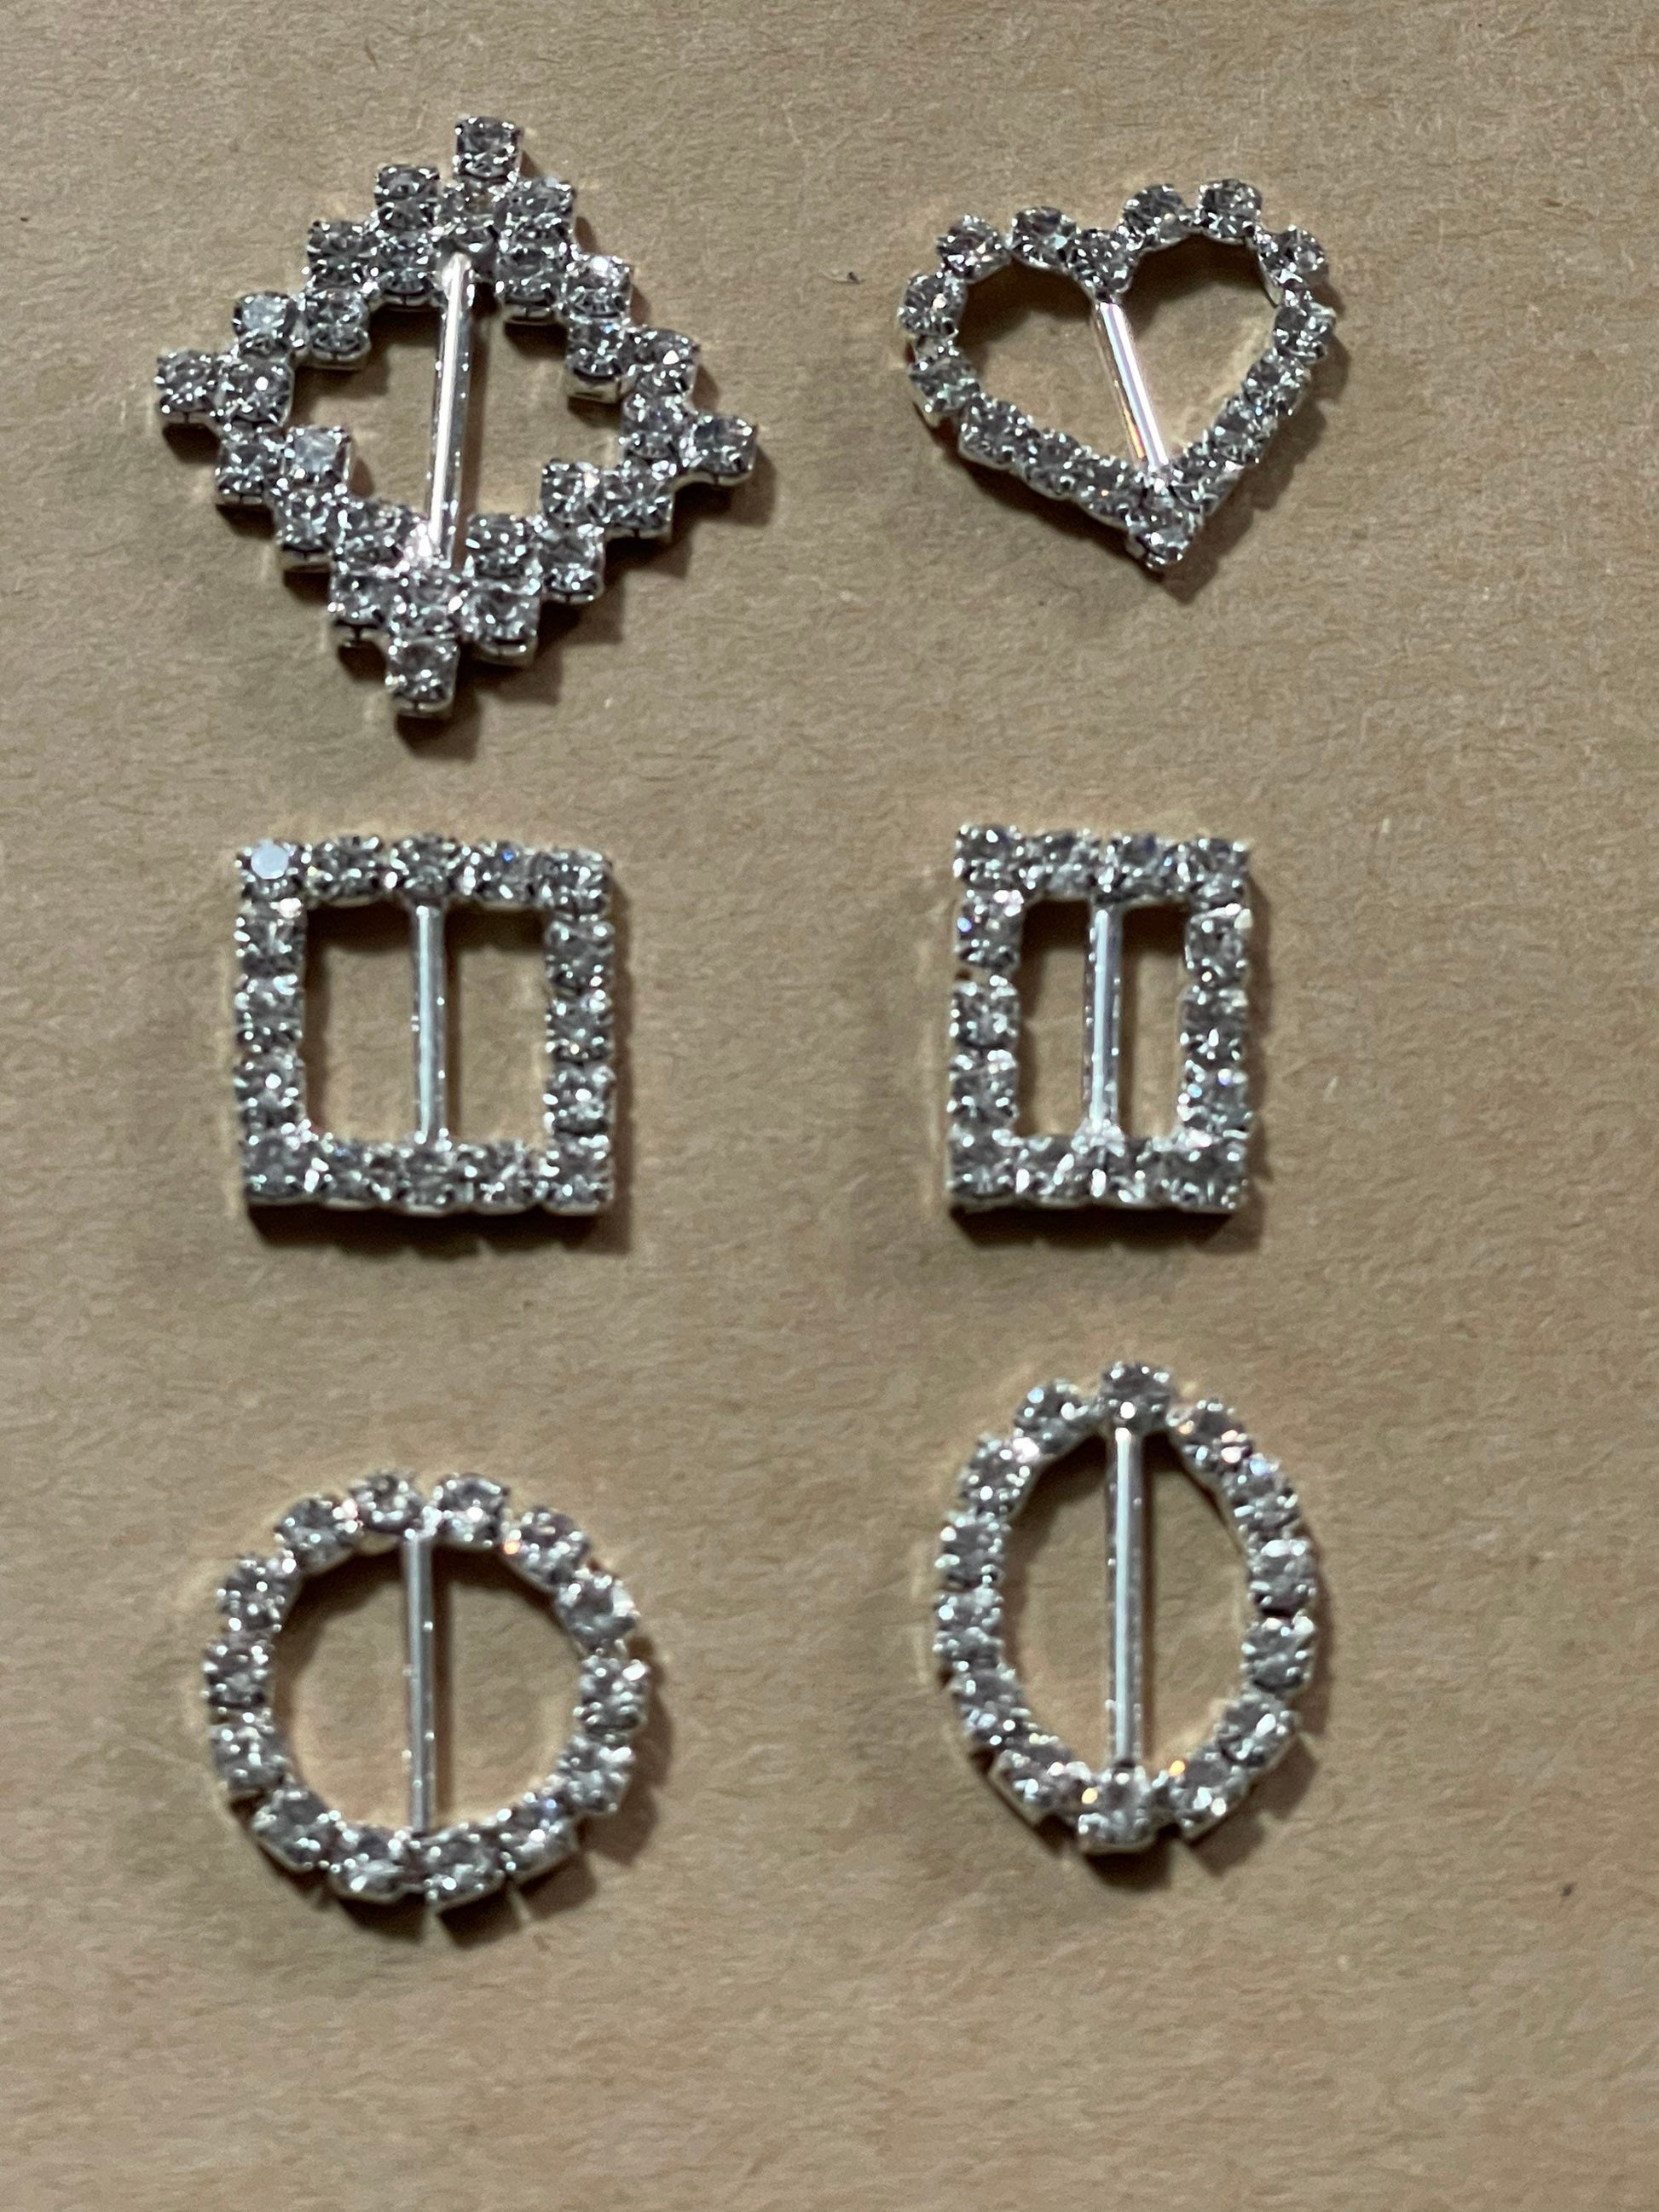 Miniature diamanté belt buckles various sizes